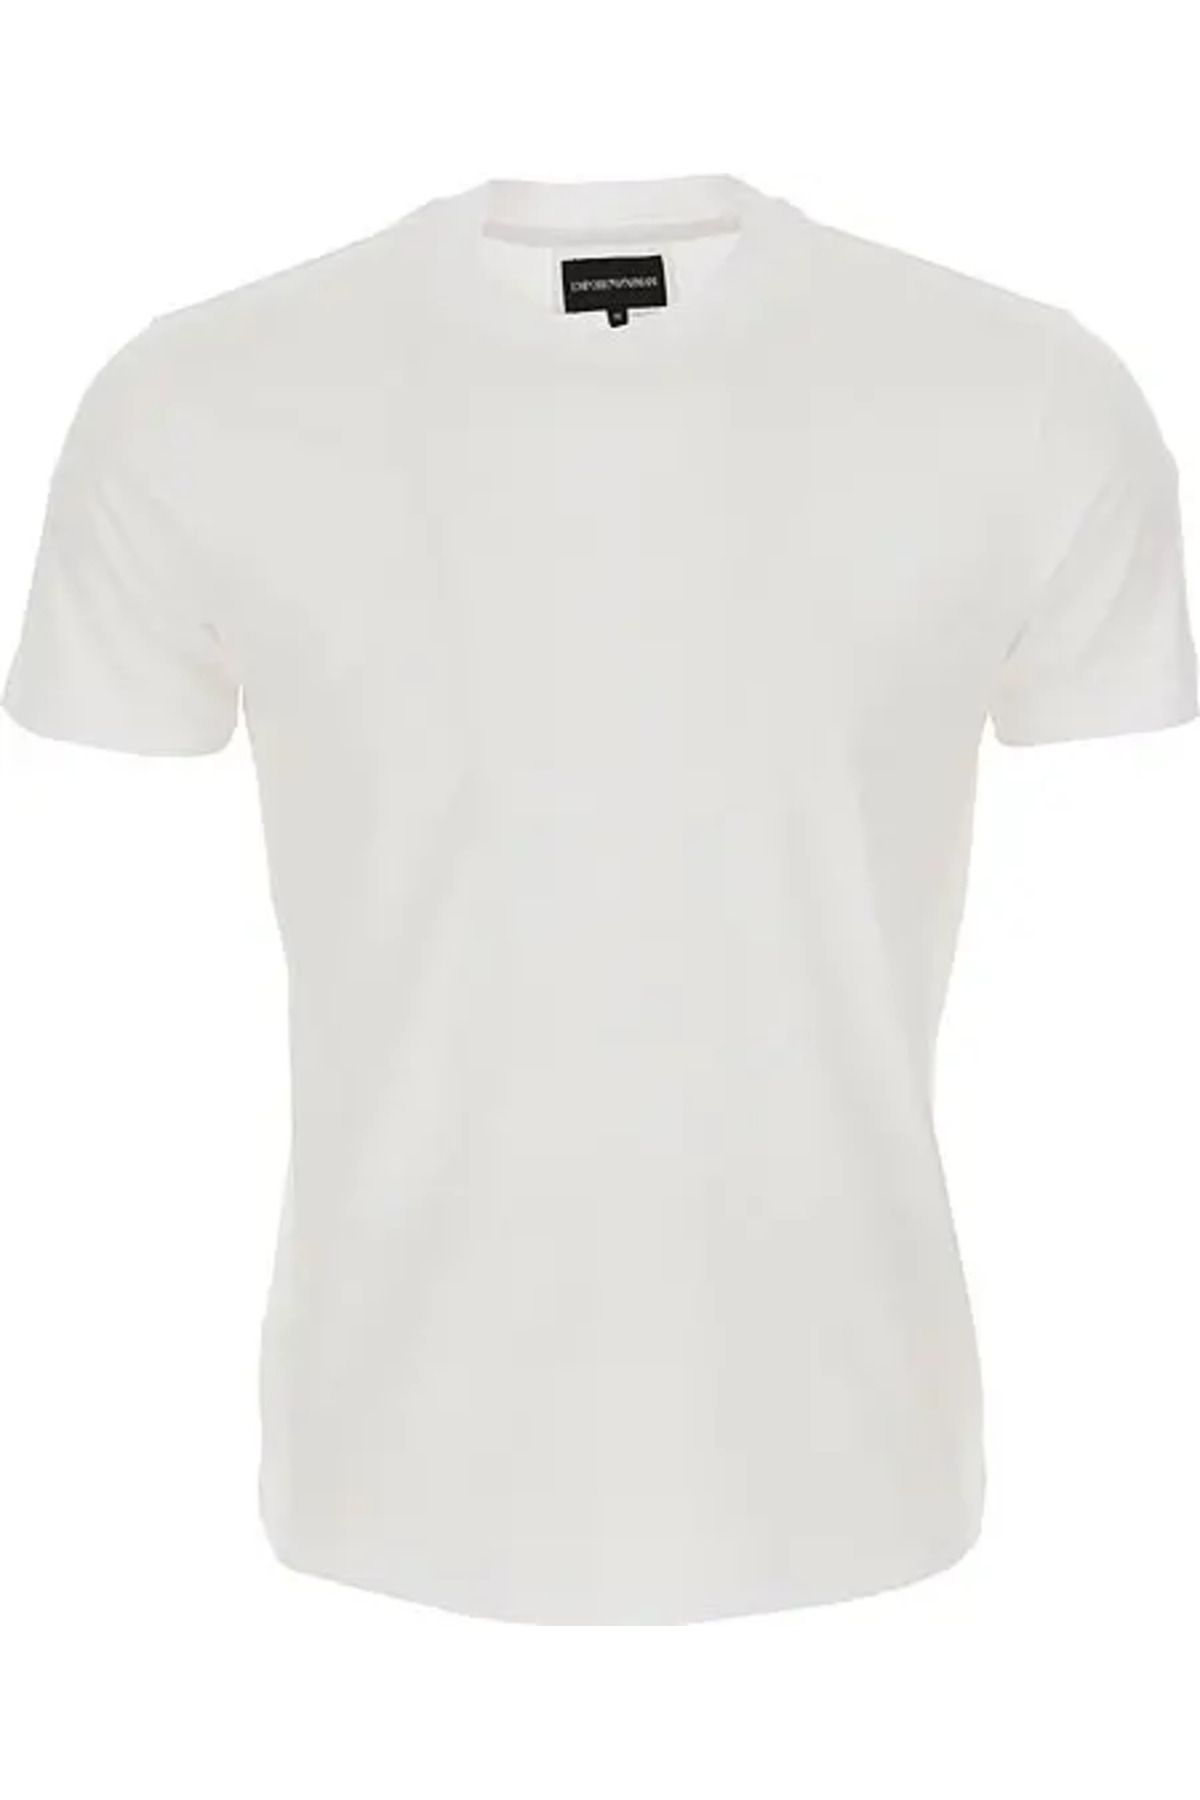 Emporio Armani Erkek Pamuklu Jersey Kumaş Marka Logolu Beyaz T-Shirt 8N1TE8 1JUVZ-0100